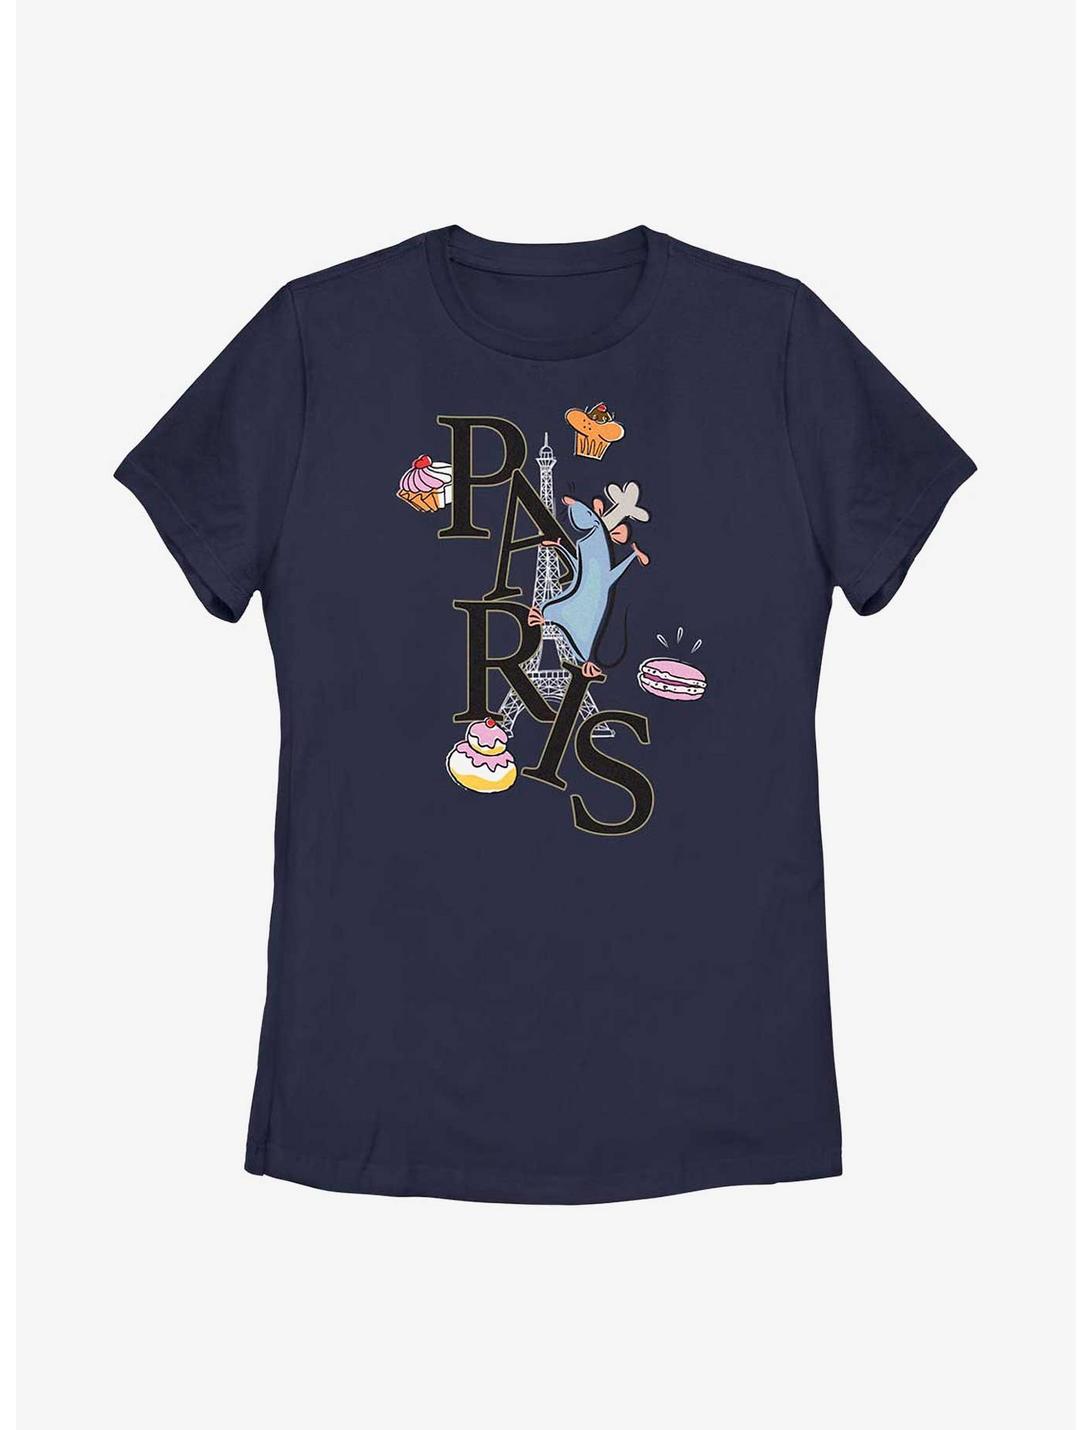 Disney Pixar Ratatouille Paris Remy Womens T-Shirt, NAVY, hi-res